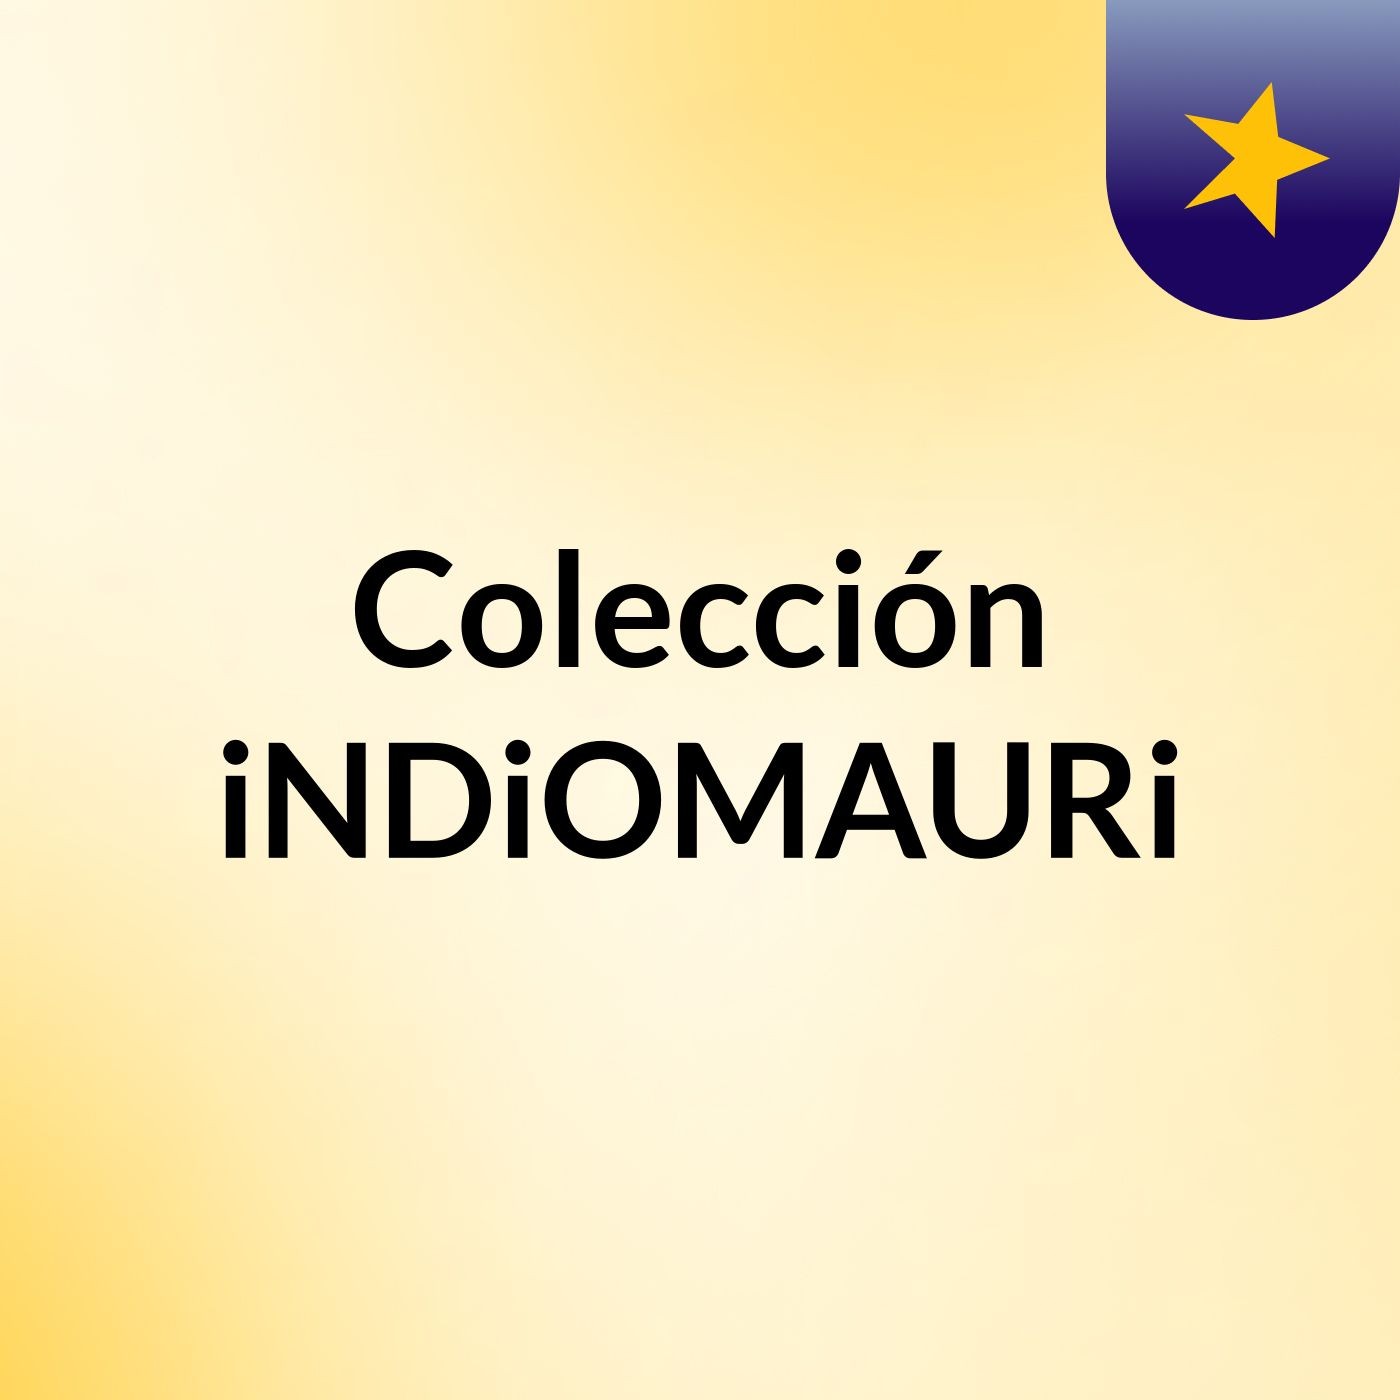 Colección iNDiOMAURi